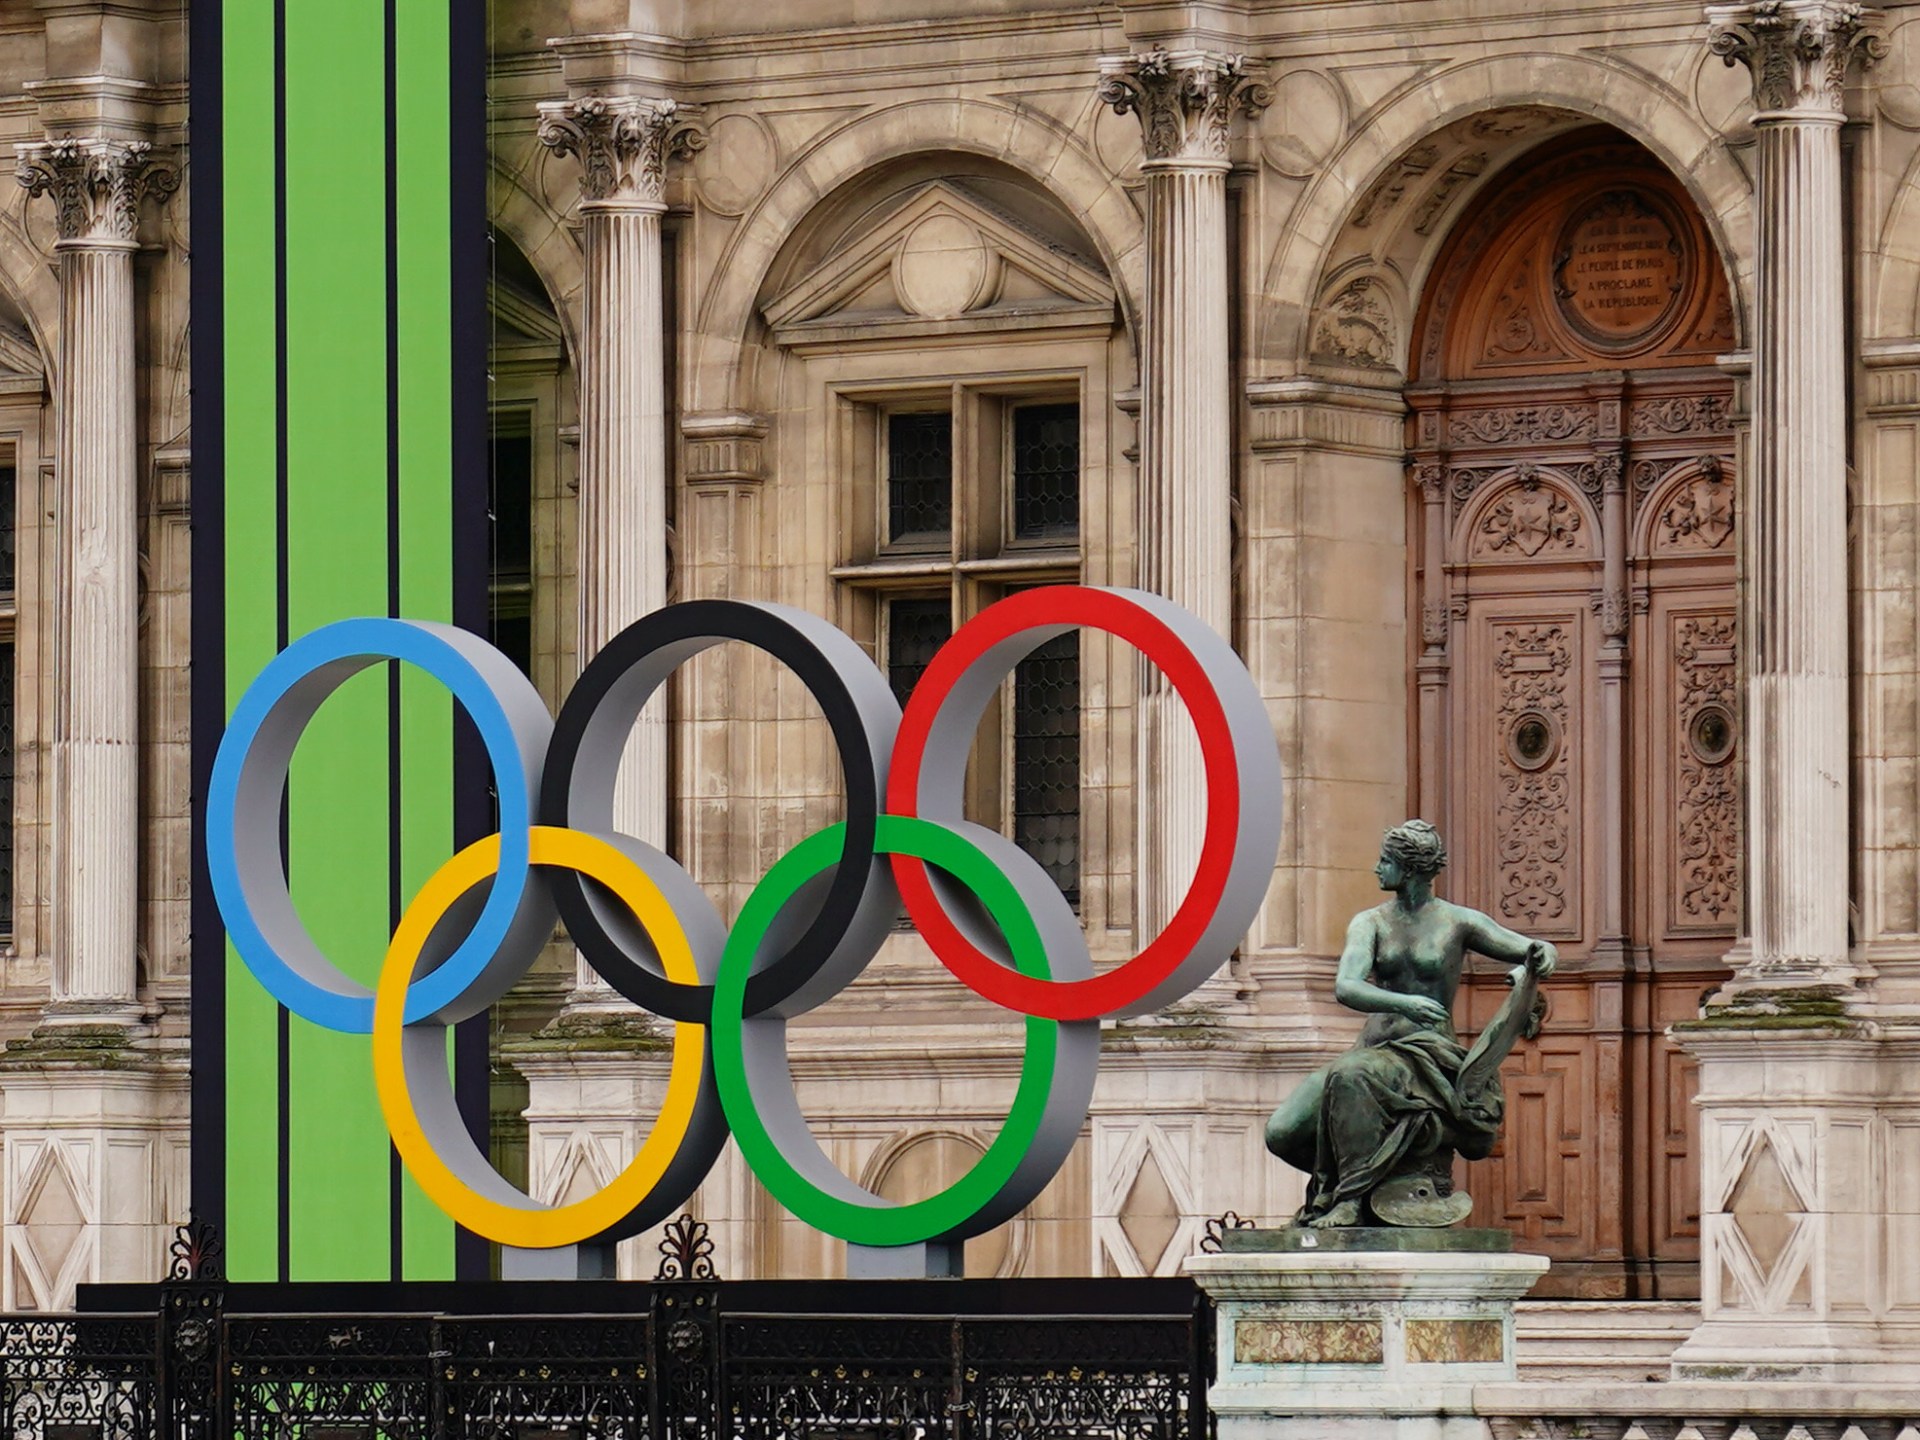 India mengajukan tawaran untuk menjadi tuan rumah Olimpiade 2036 karena IOC mengkritik ‘politisasi olahraga’ |  Berita Olimpiade